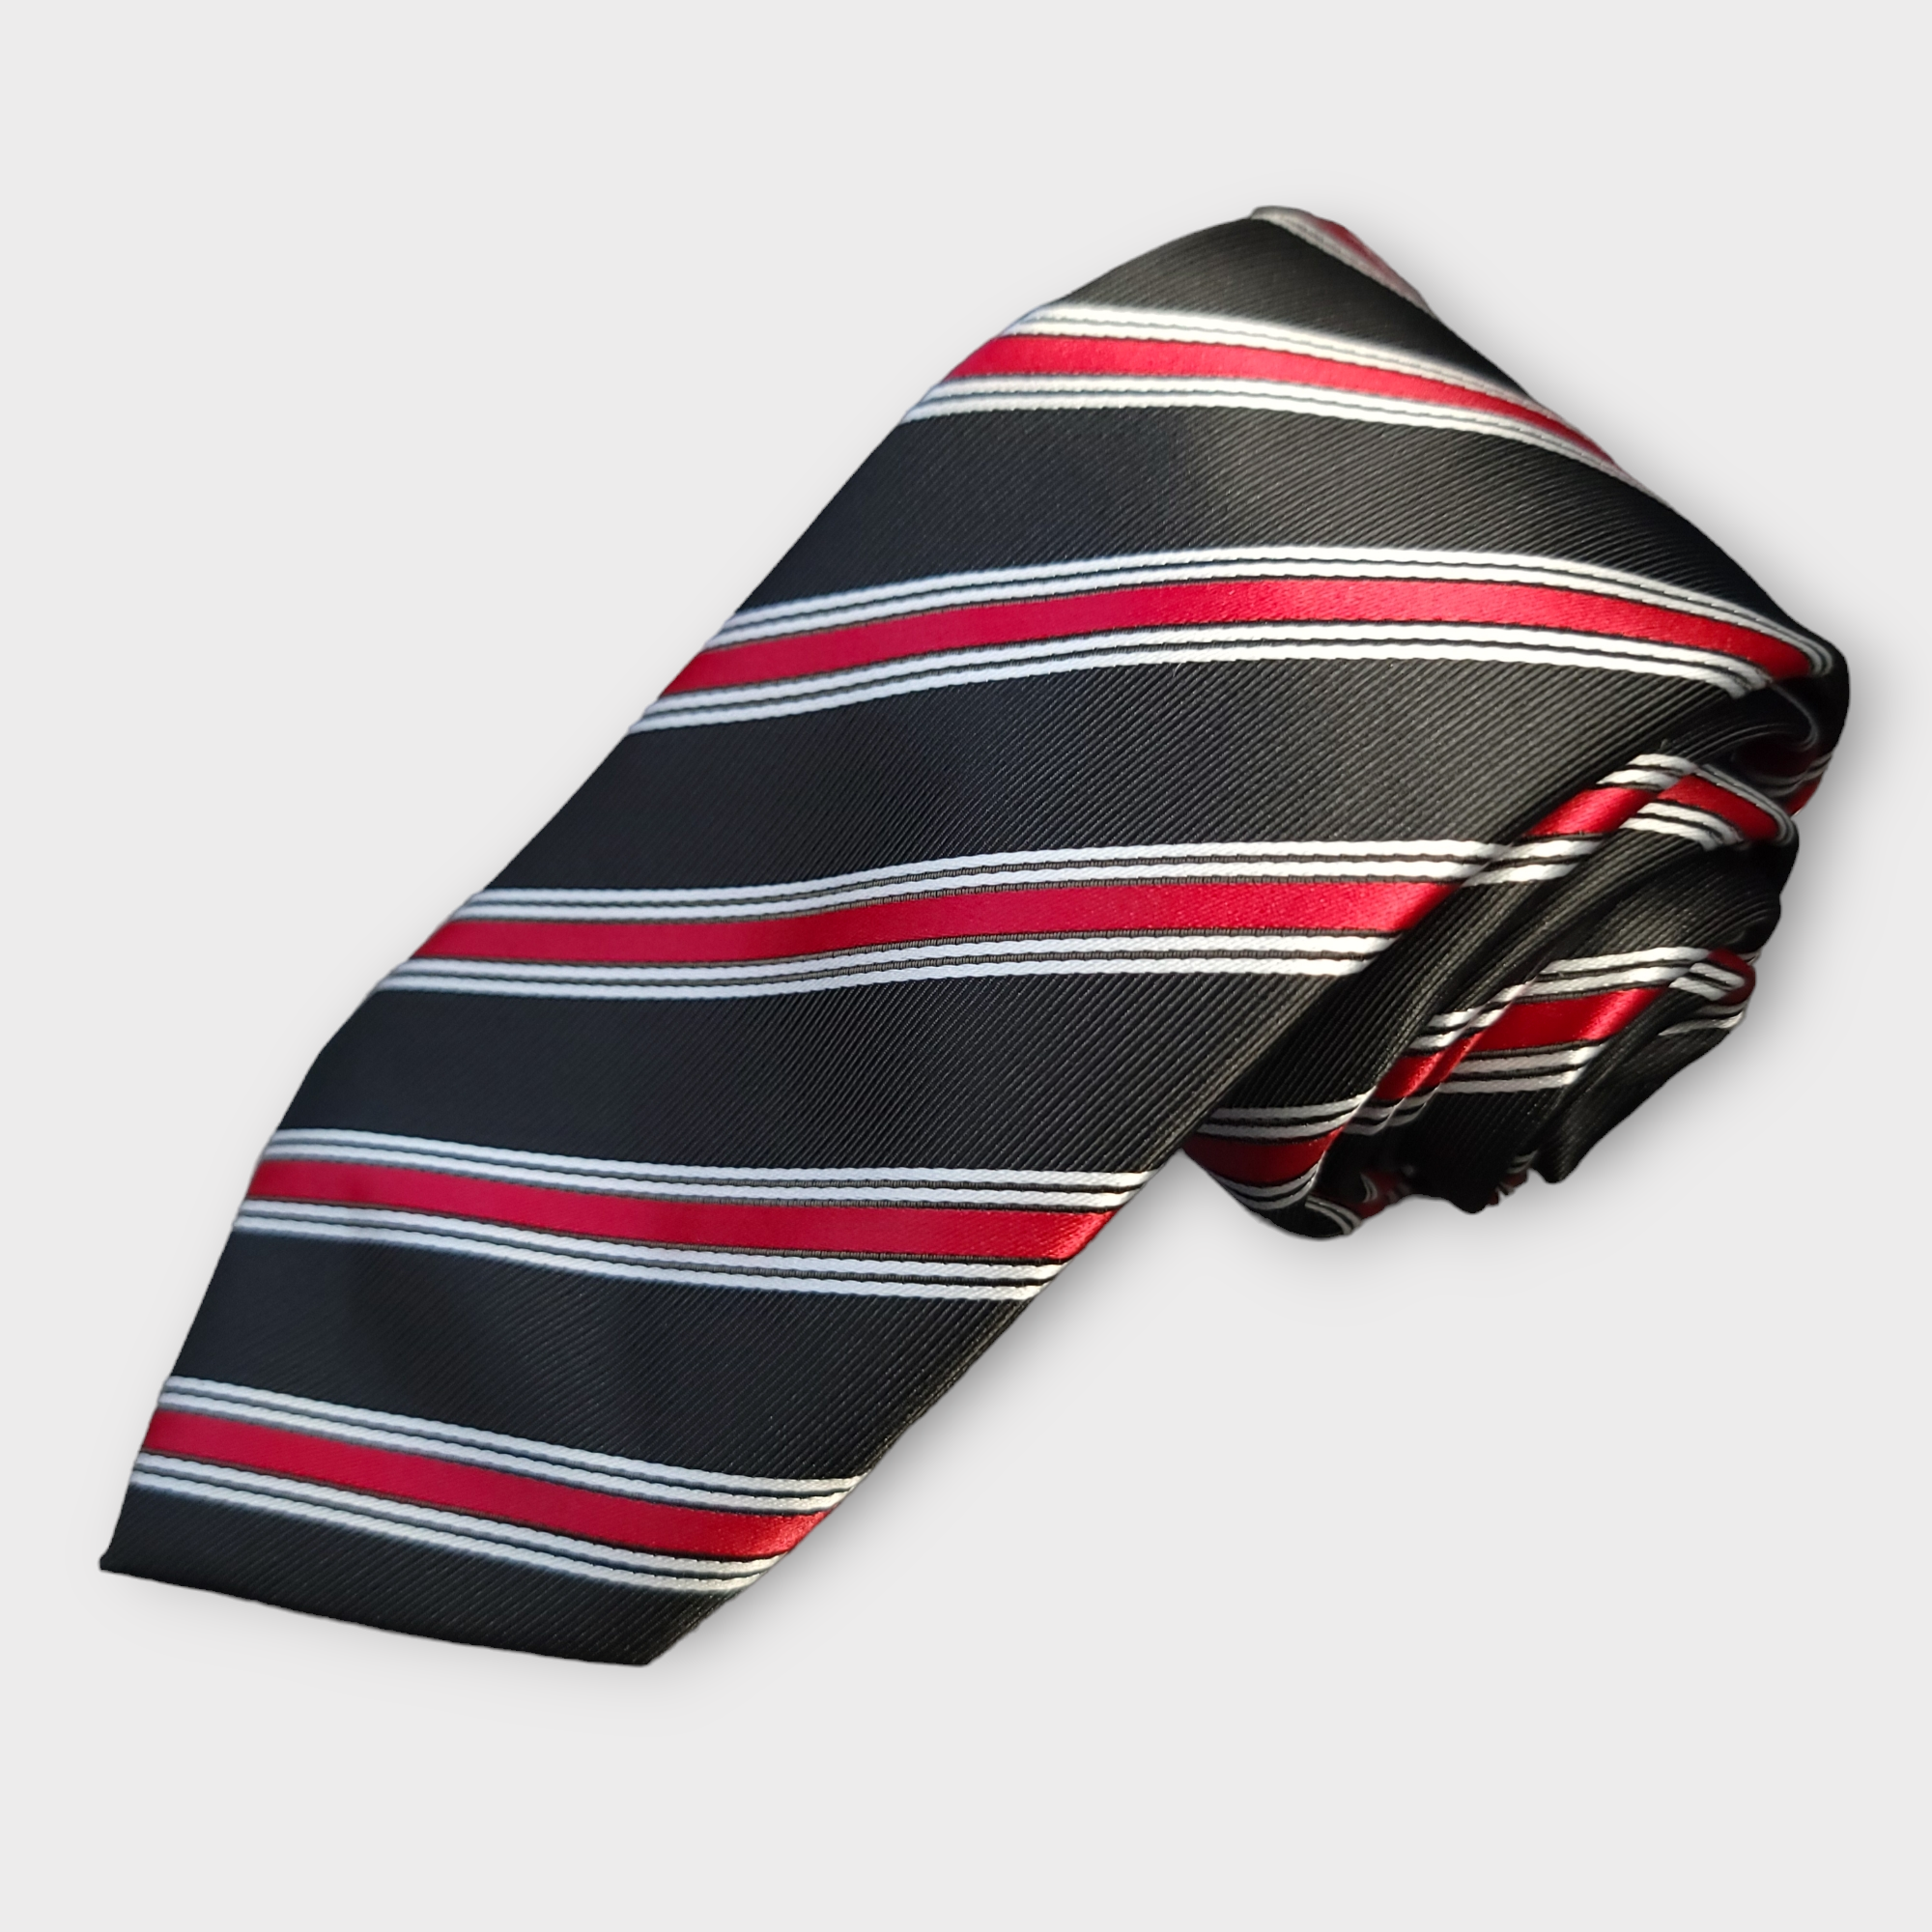 Black Red Striped Silk Tie Pocket Square Cufflink Set